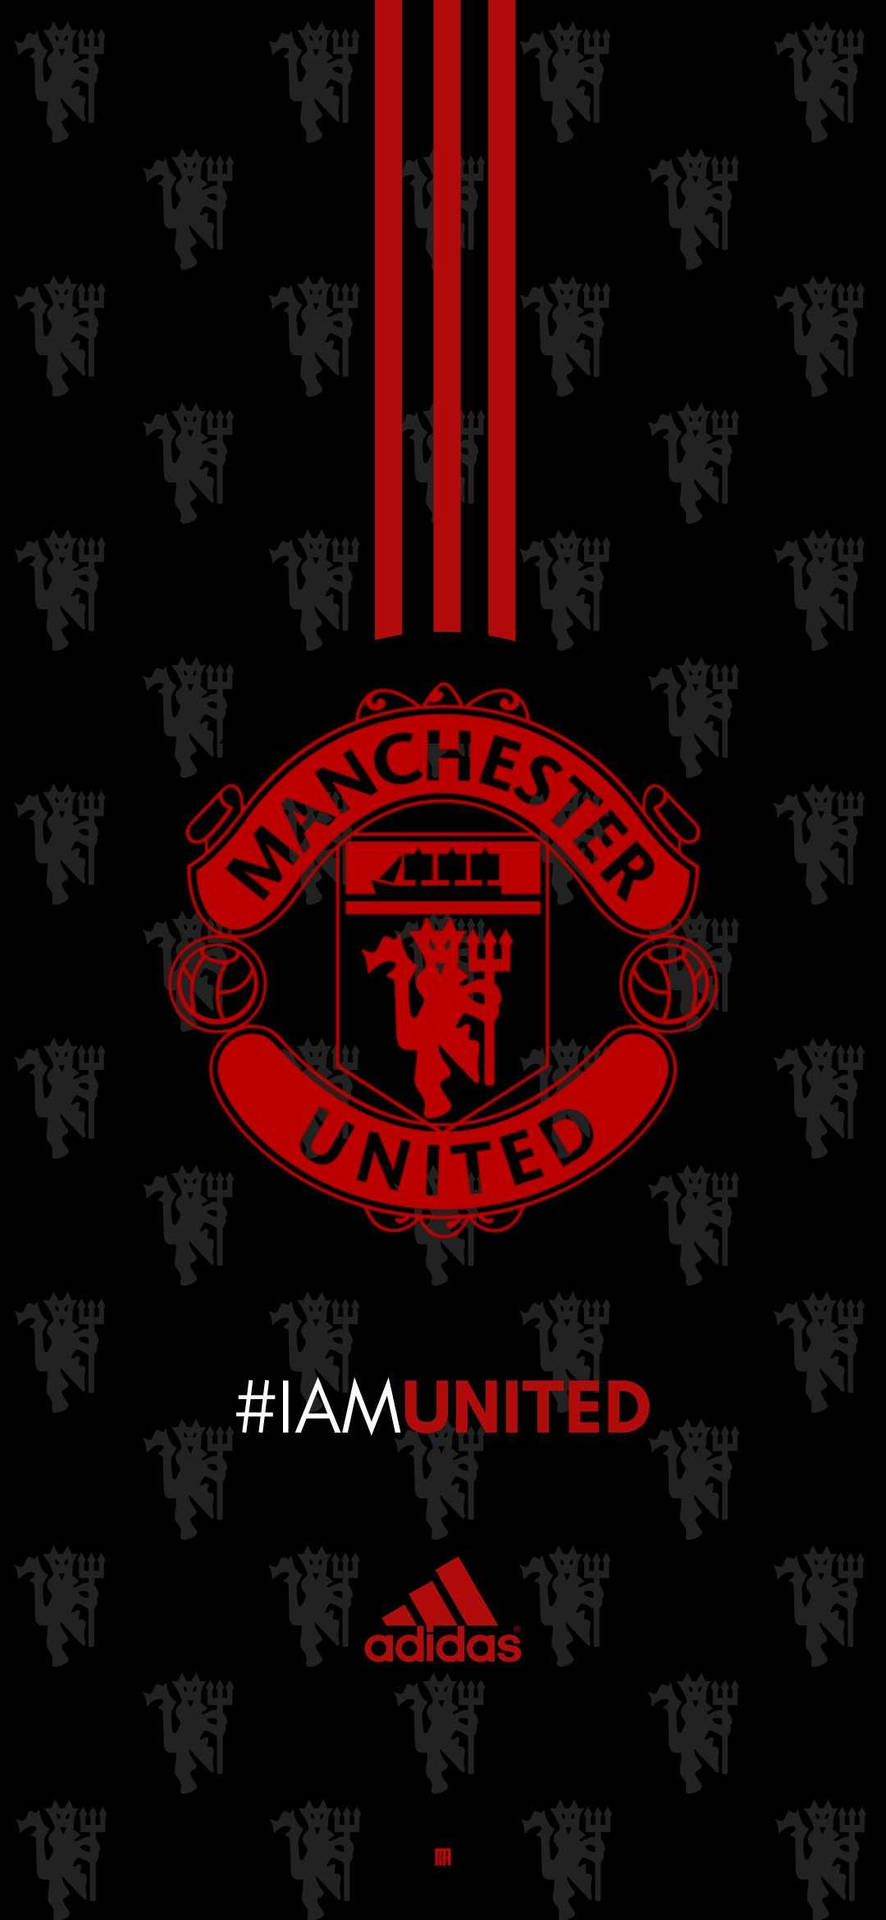 Manchester United Logo And Adidas Logo Background